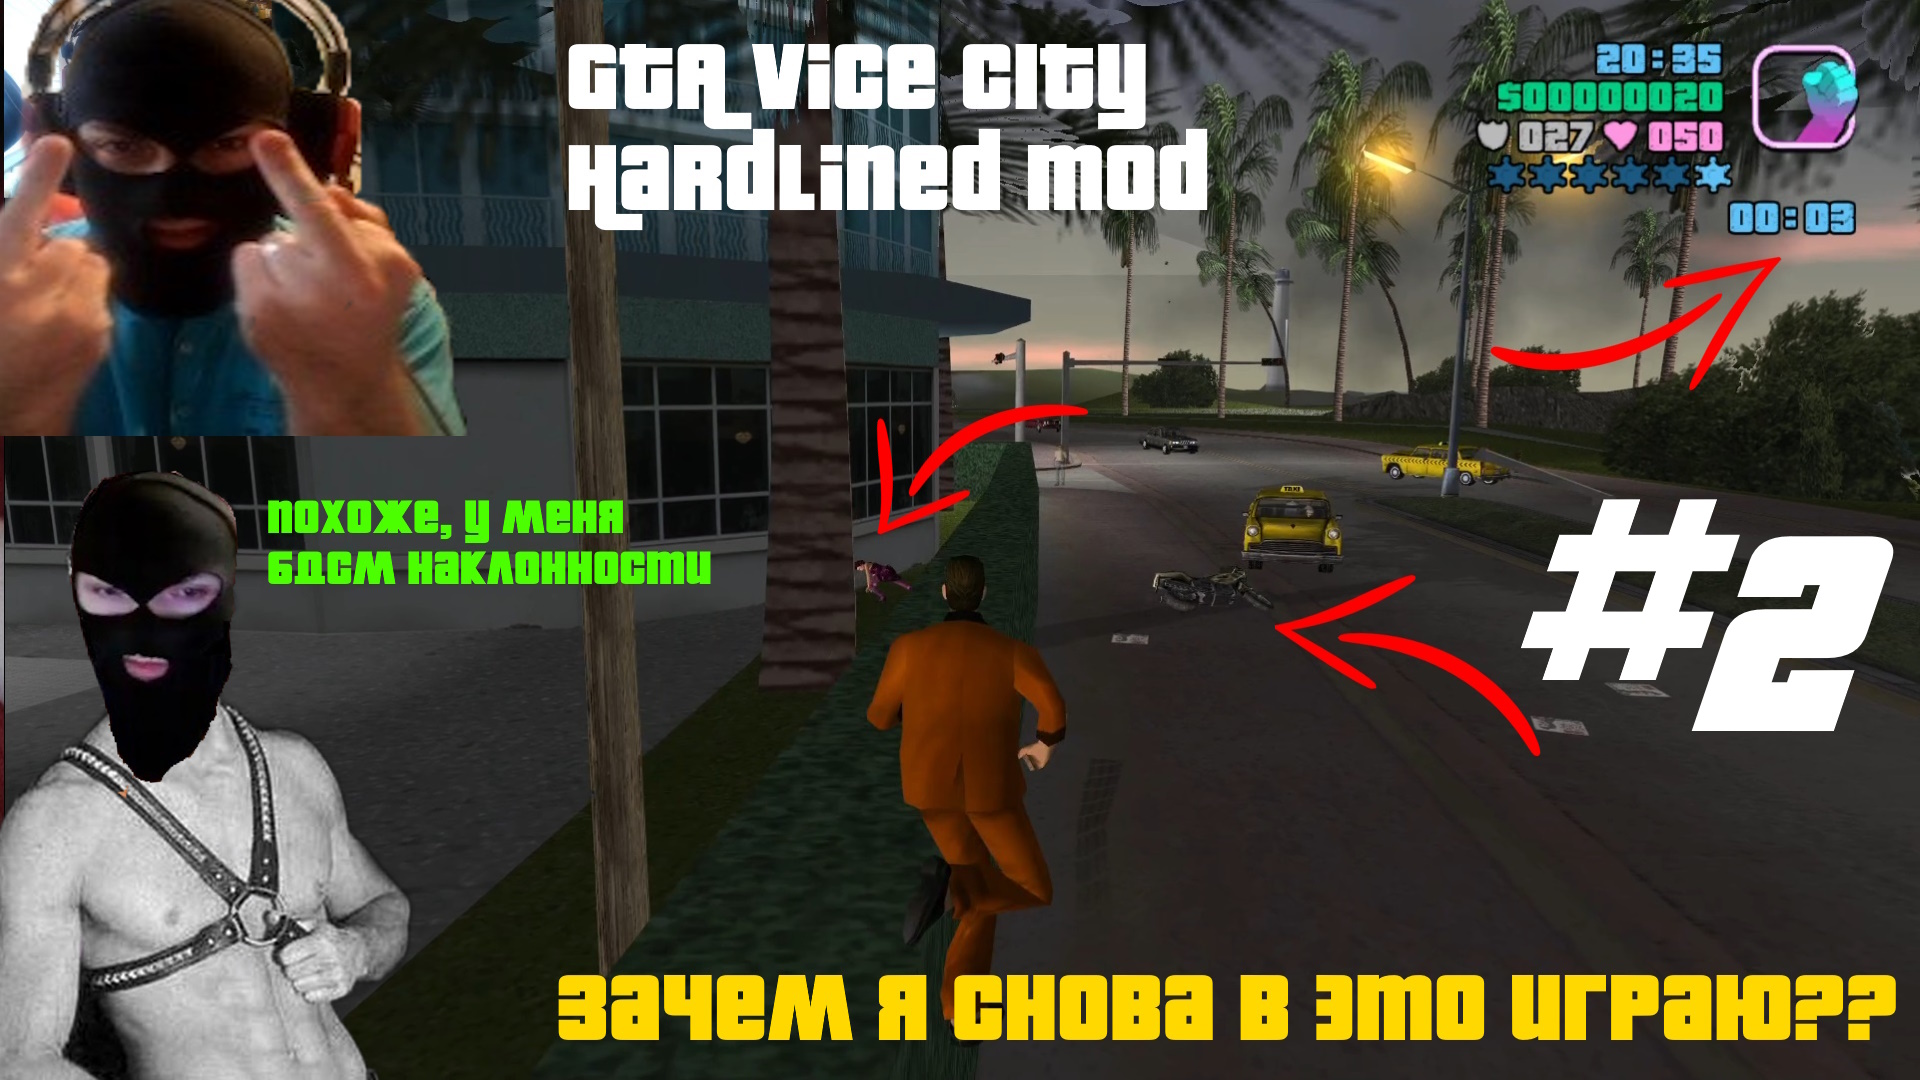 ЗАЧЕМ Я СНОВА ИГРАЮ В ЭТОТ МОД?? ПОХОЖЕ, Я МАЗОХИСТ! - GTA Vice City Hardlined mod #2